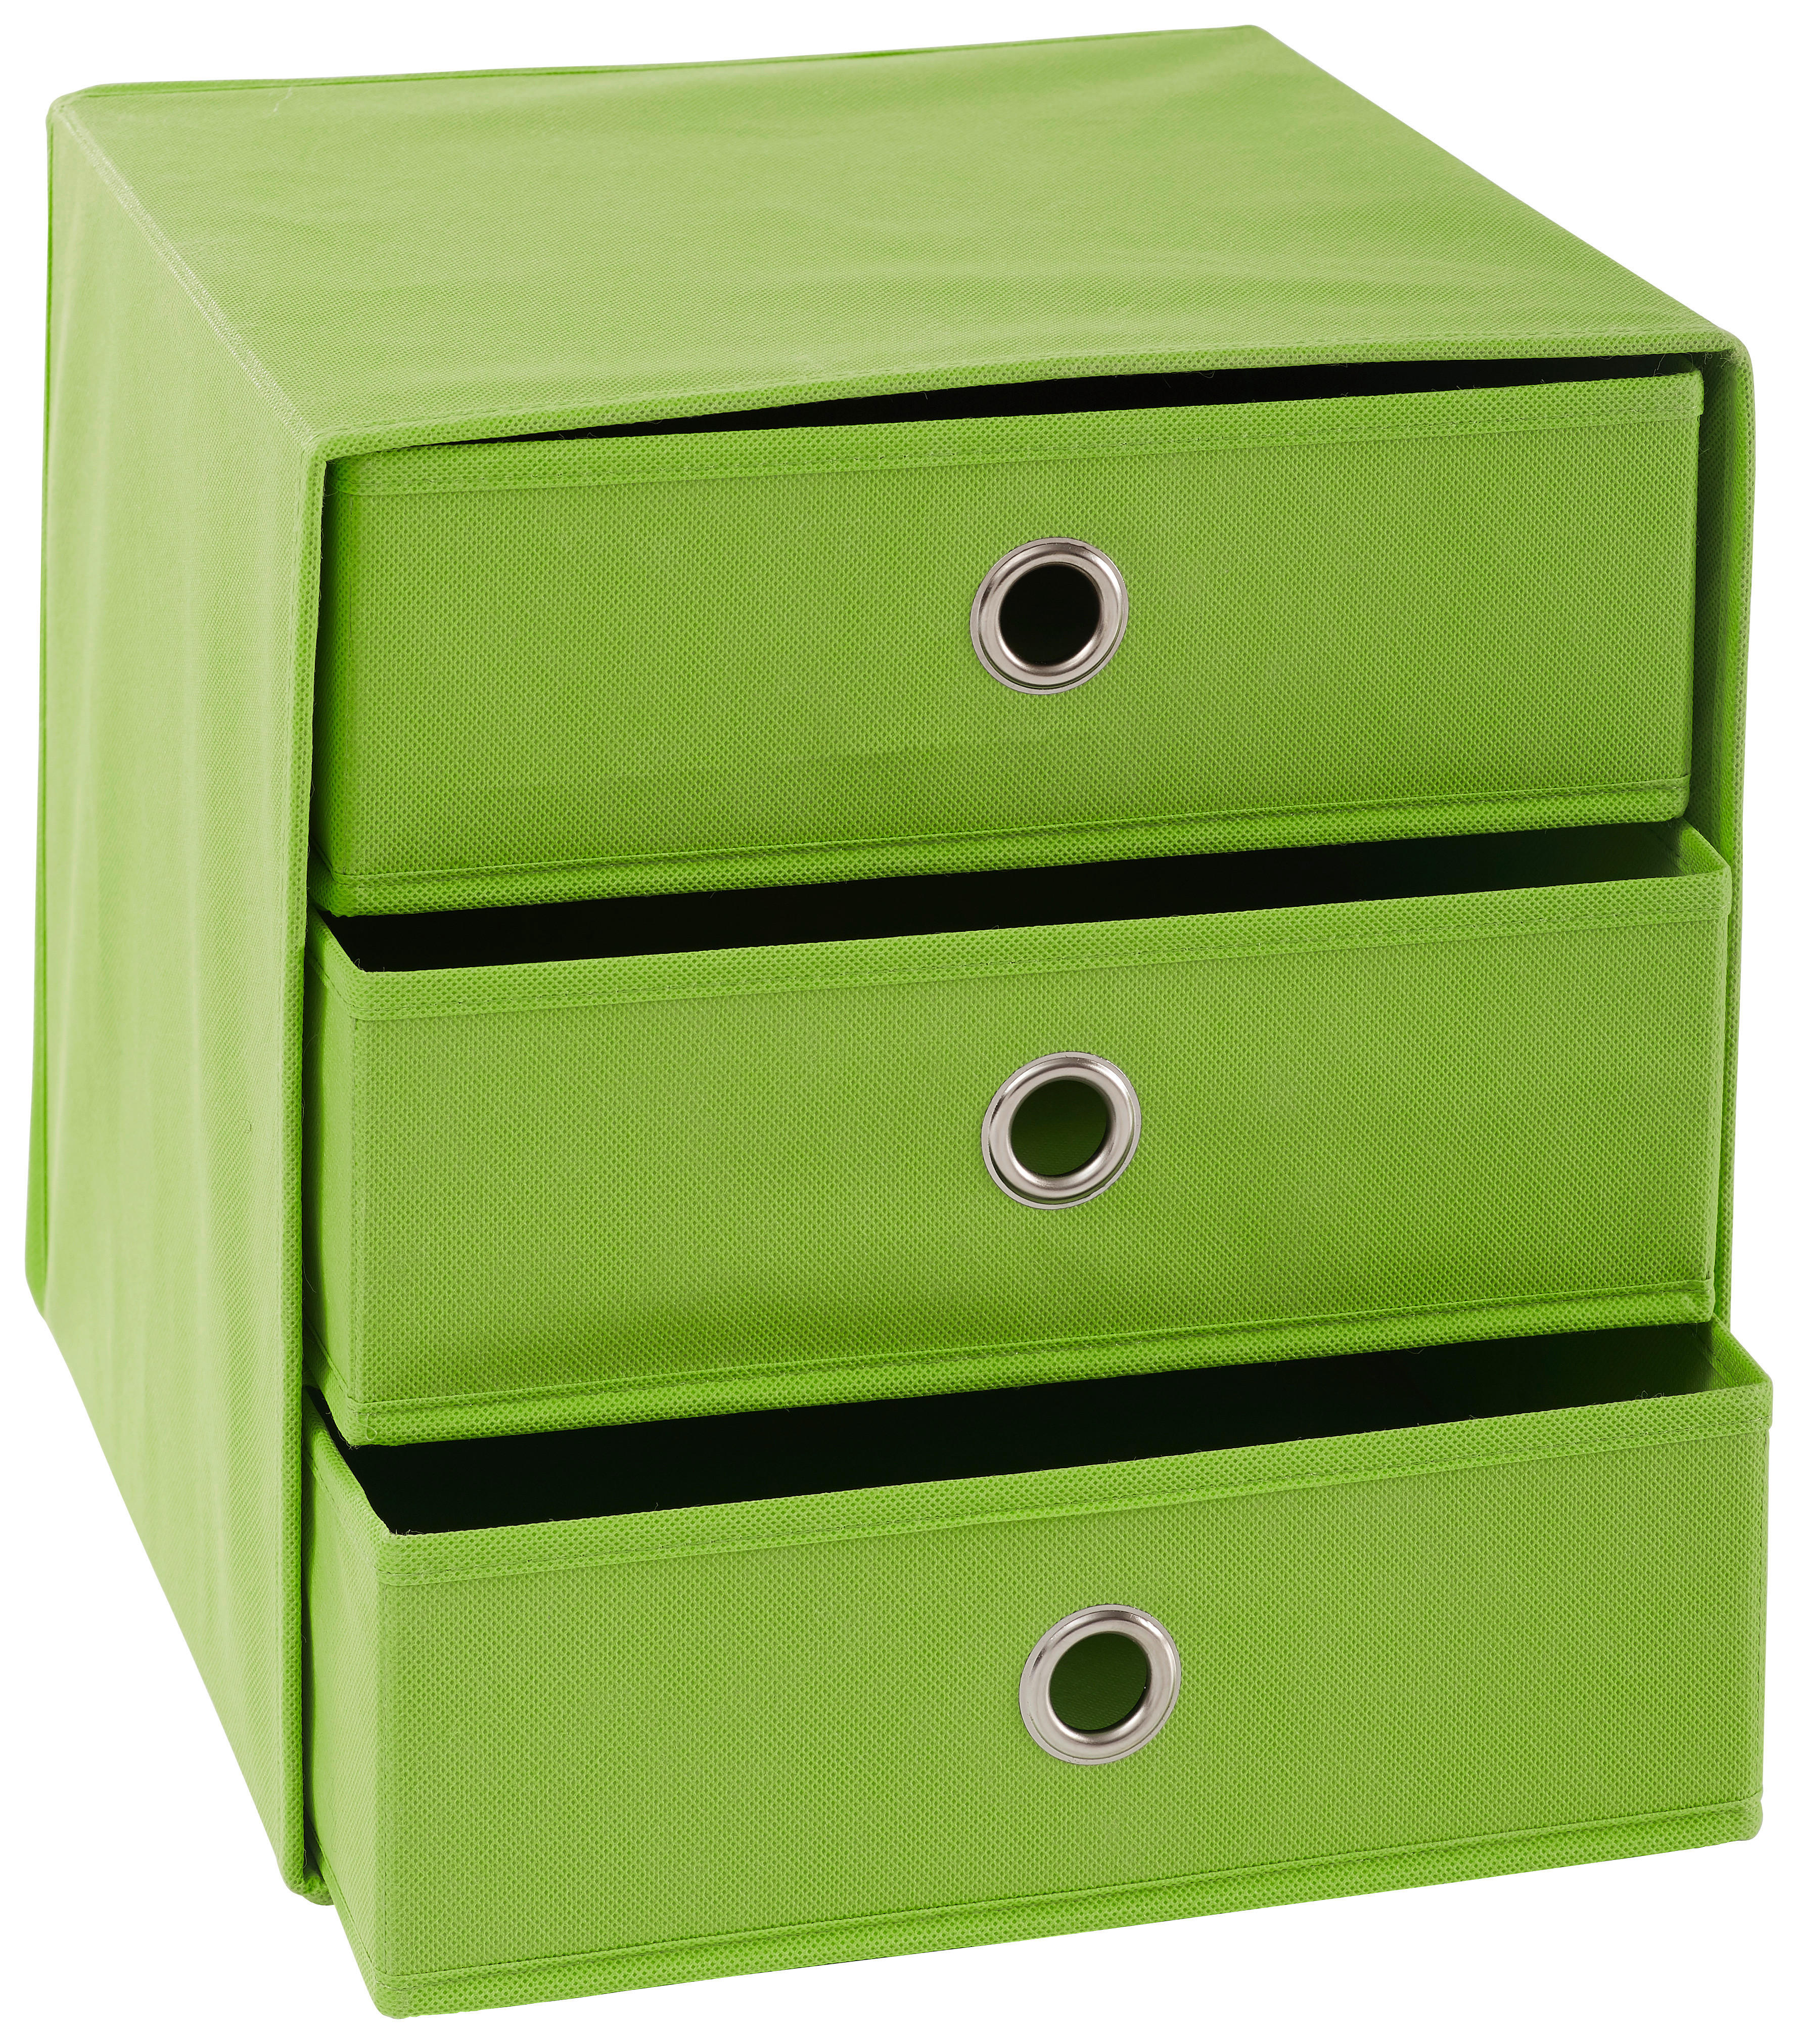 ÖSSZEHAJTHATÓ DOBOZ - Zöld/Ezüst, Design, Karton/Fém (32/32/31,5cm) - Carryhome